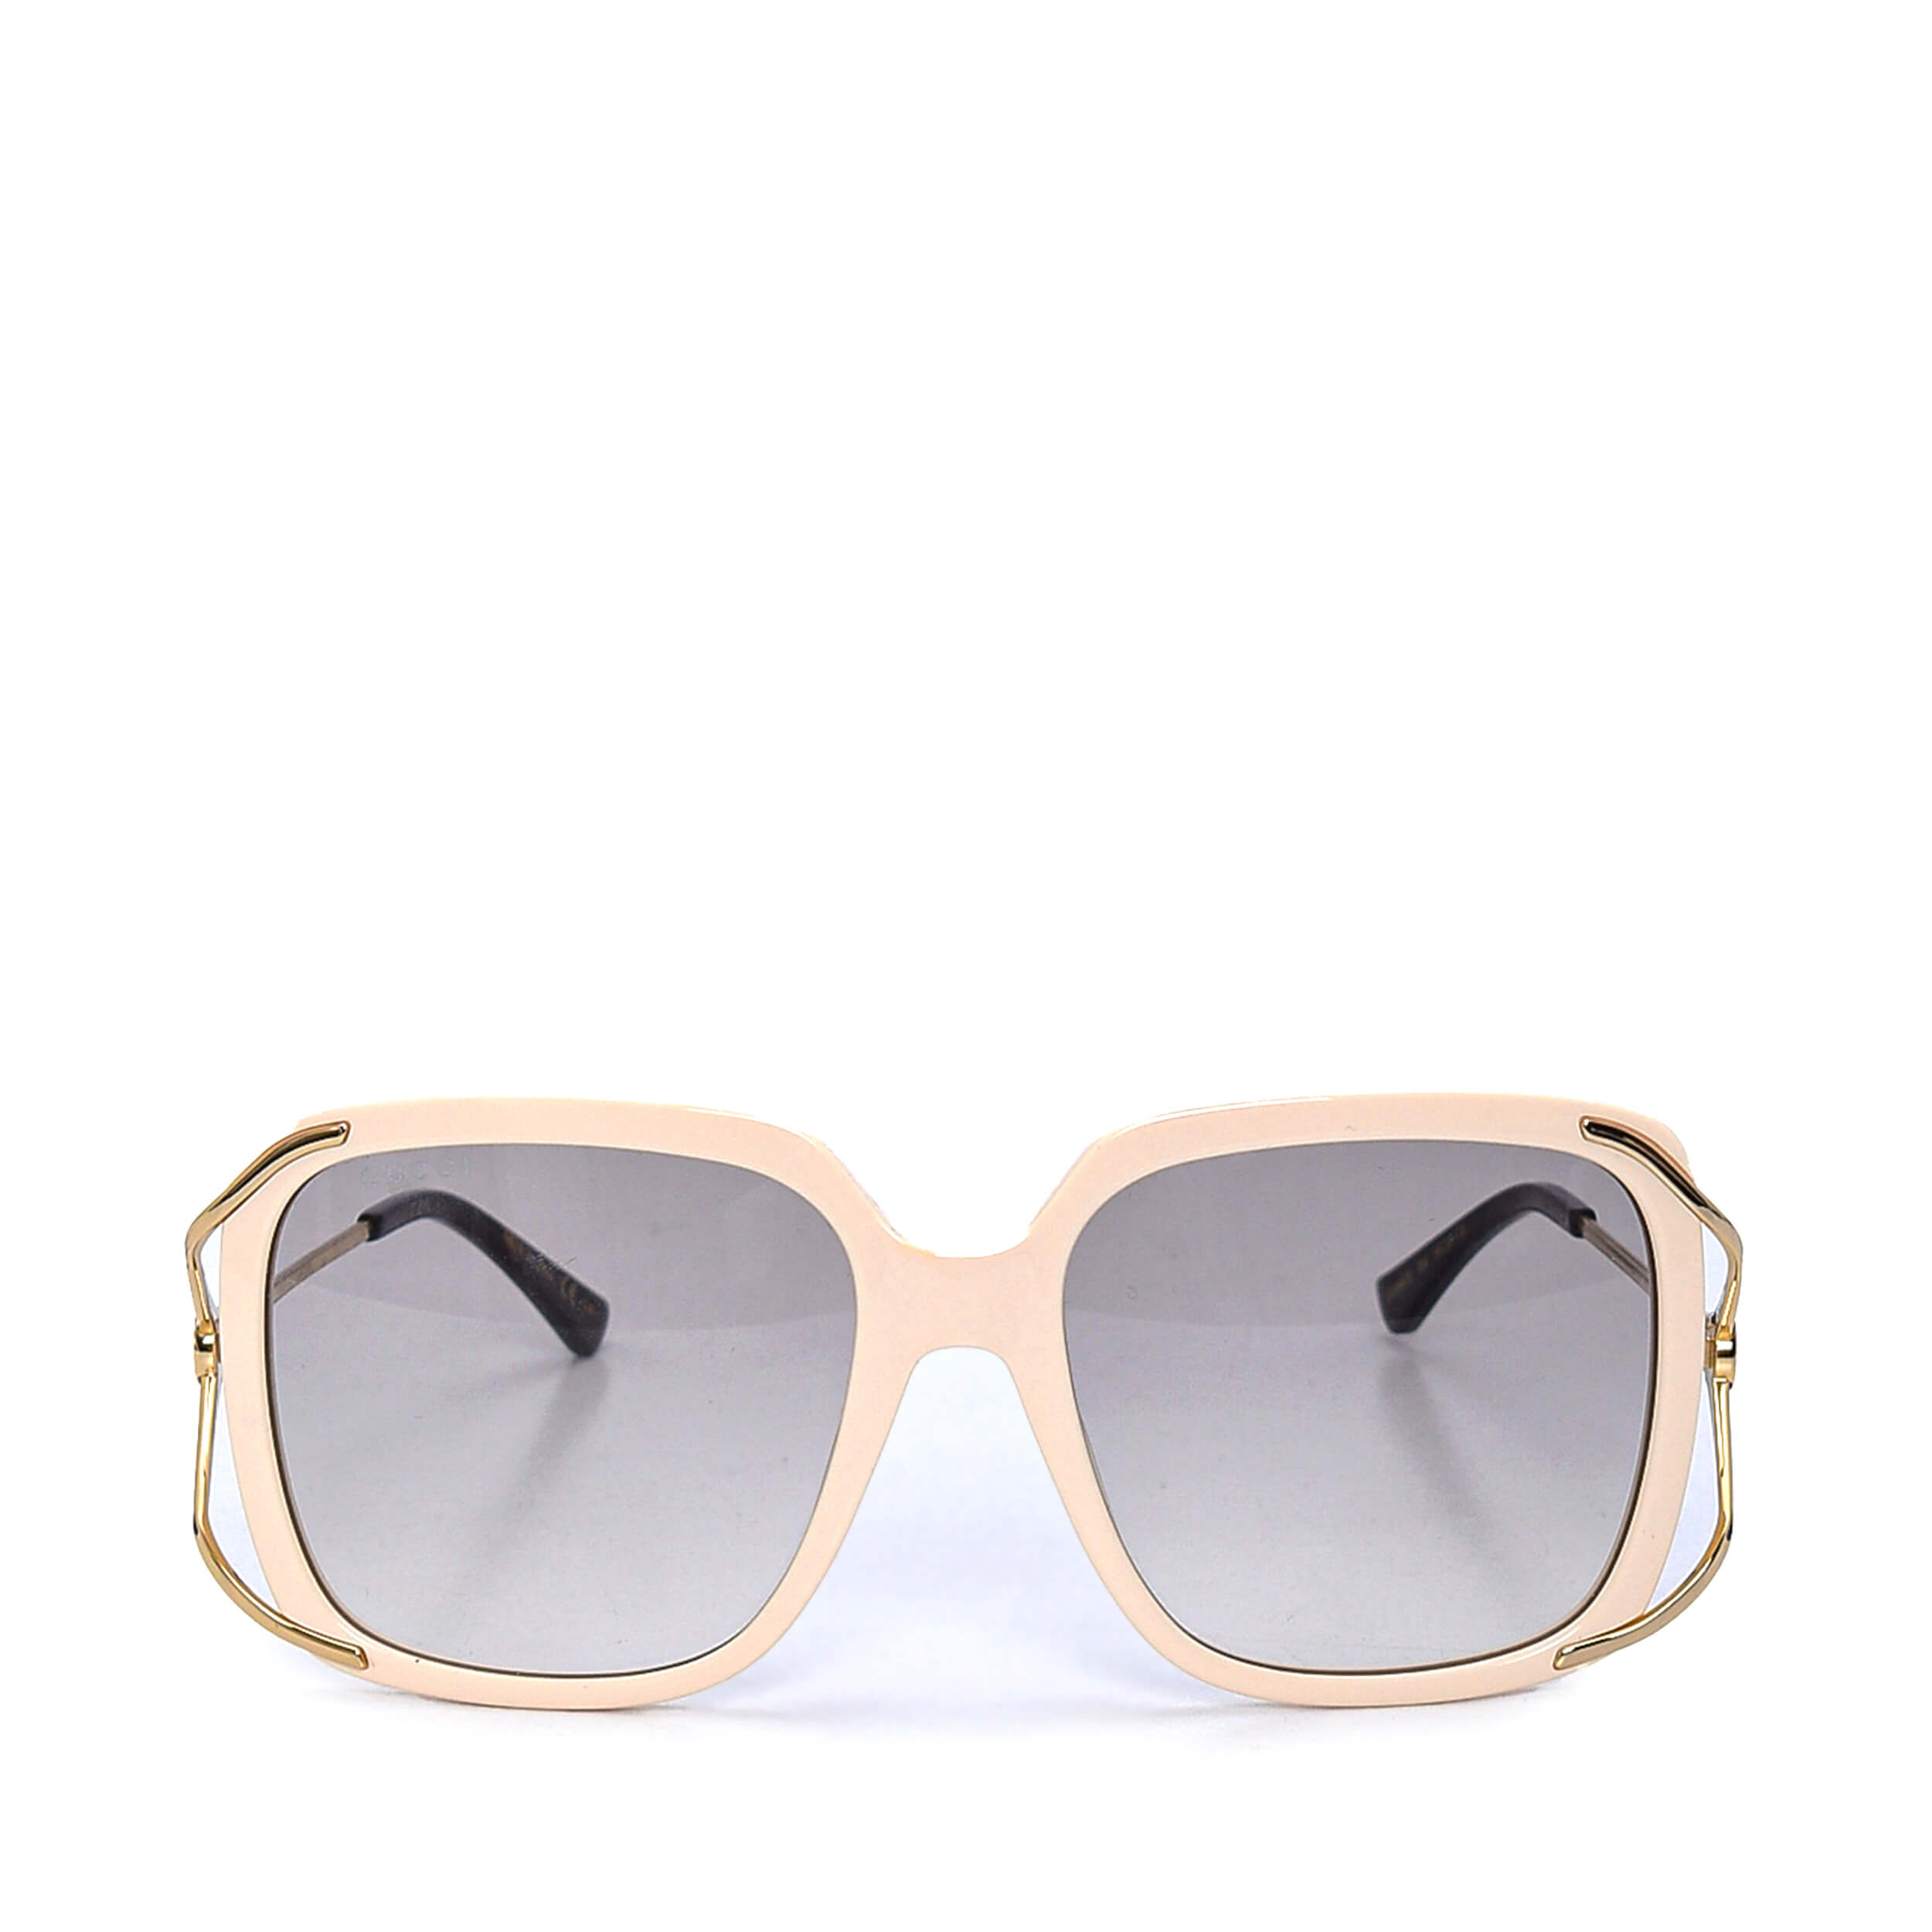 Gucci - White Round Acetate Sunglasses